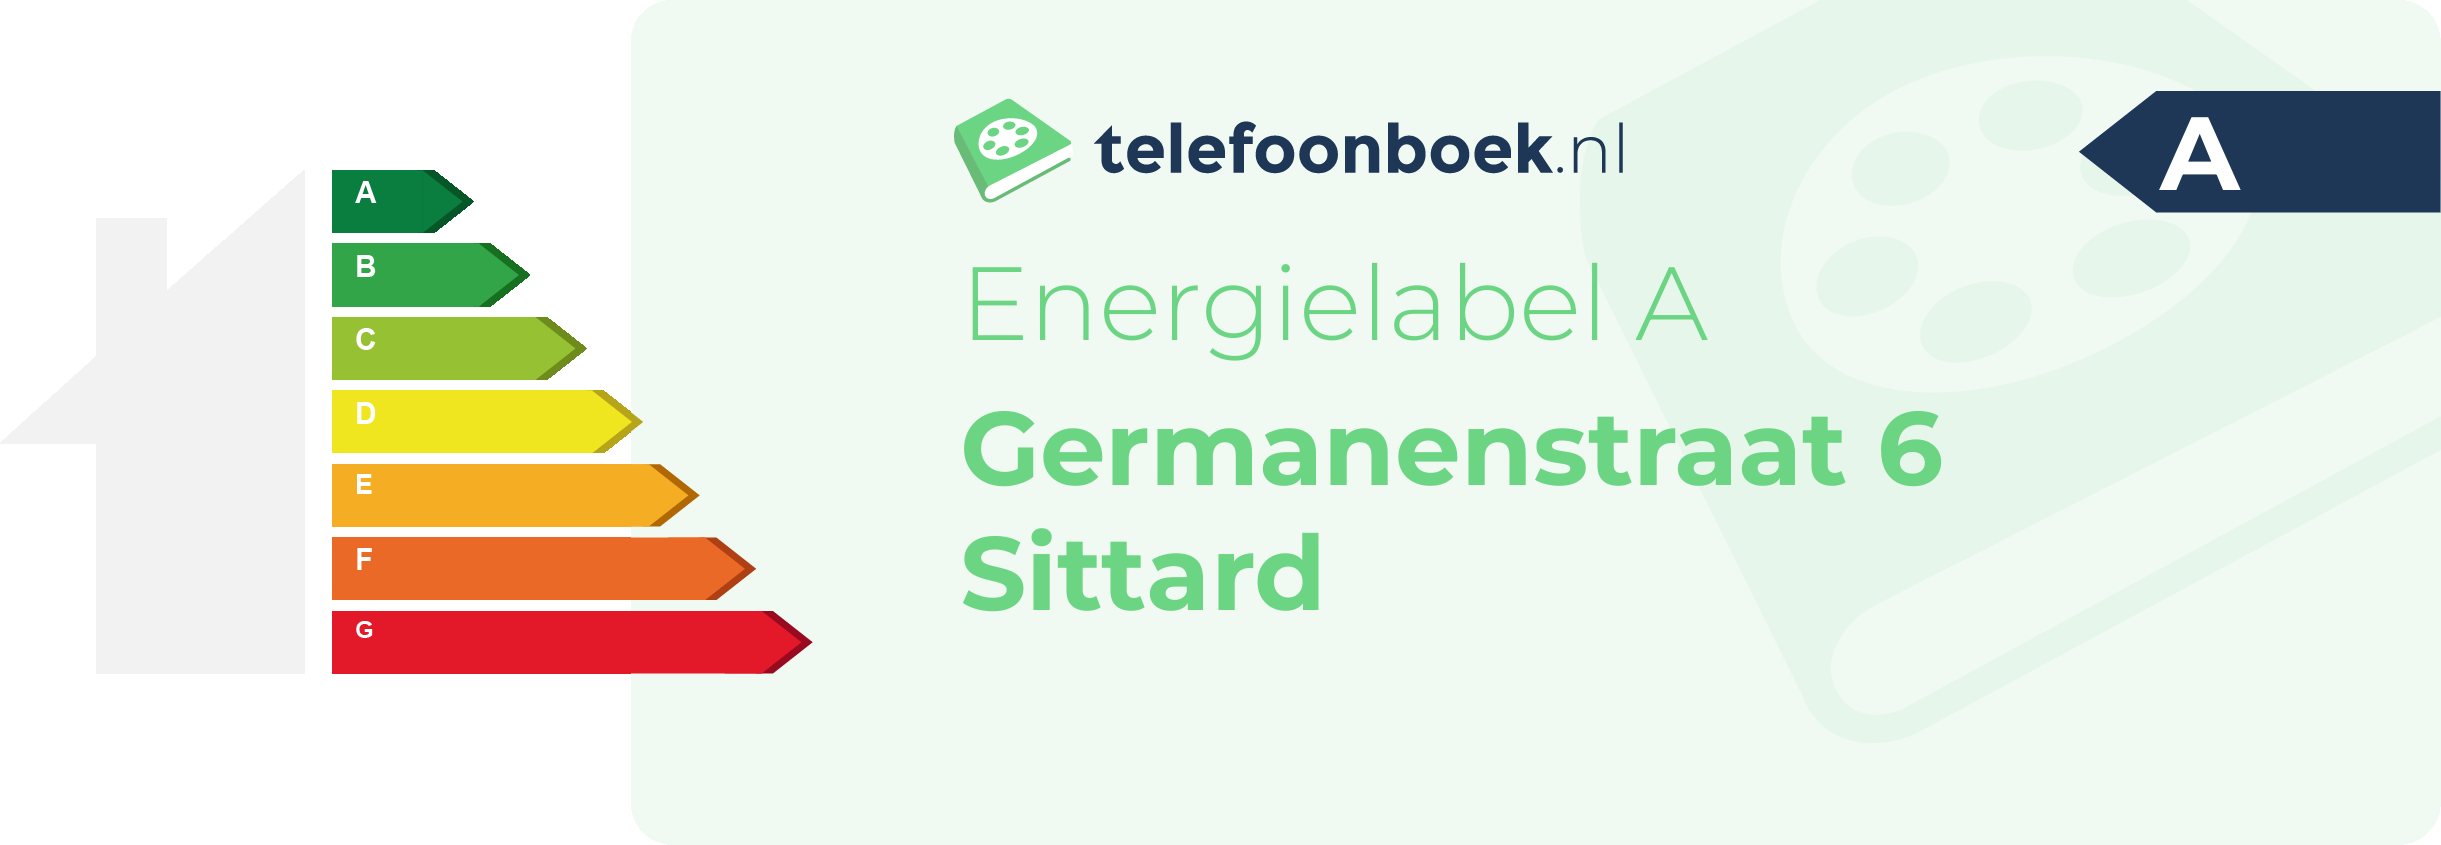 Energielabel Germanenstraat 6 Sittard